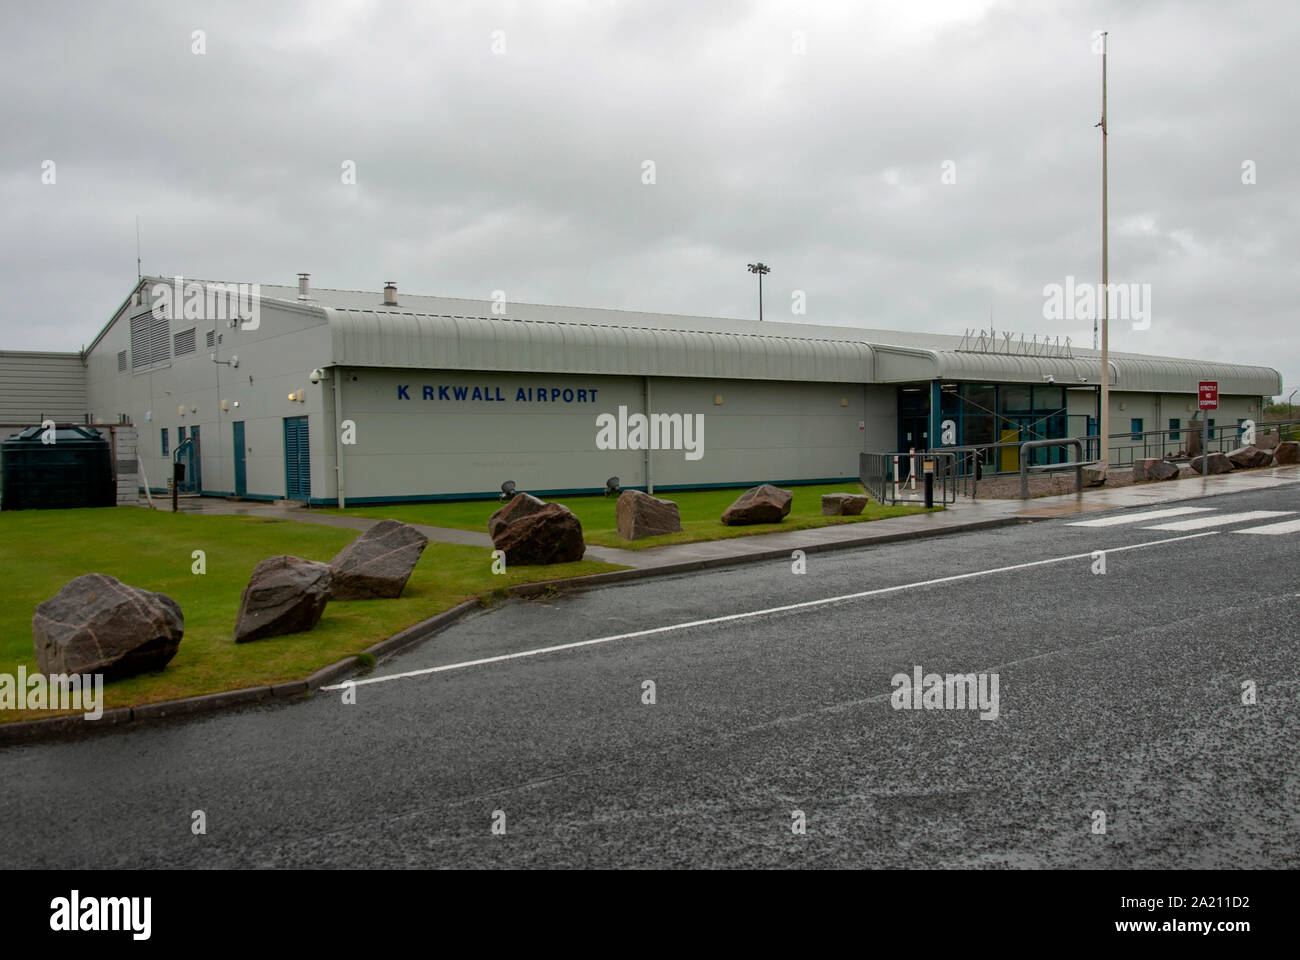 Der Terminal Kirkwall Airport Gill von Garth Mainland Orkney Inseln Schottland United Kingdom Außenansicht grau Metall Stahl verkleidet Einstöckigen t Stockfoto